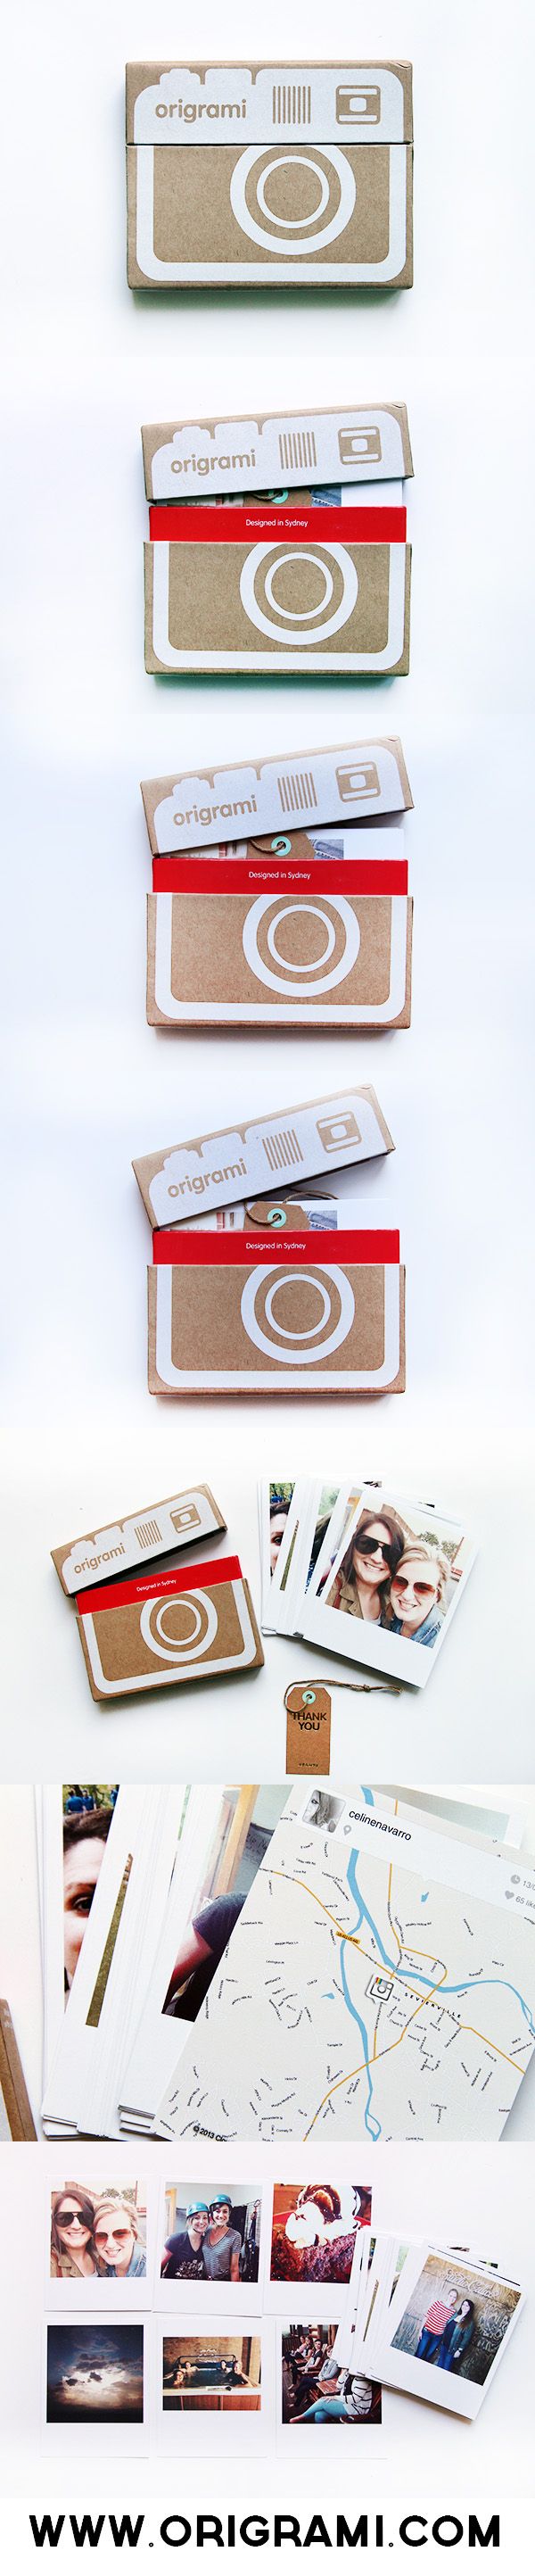 Origrami mini album #packaging PD